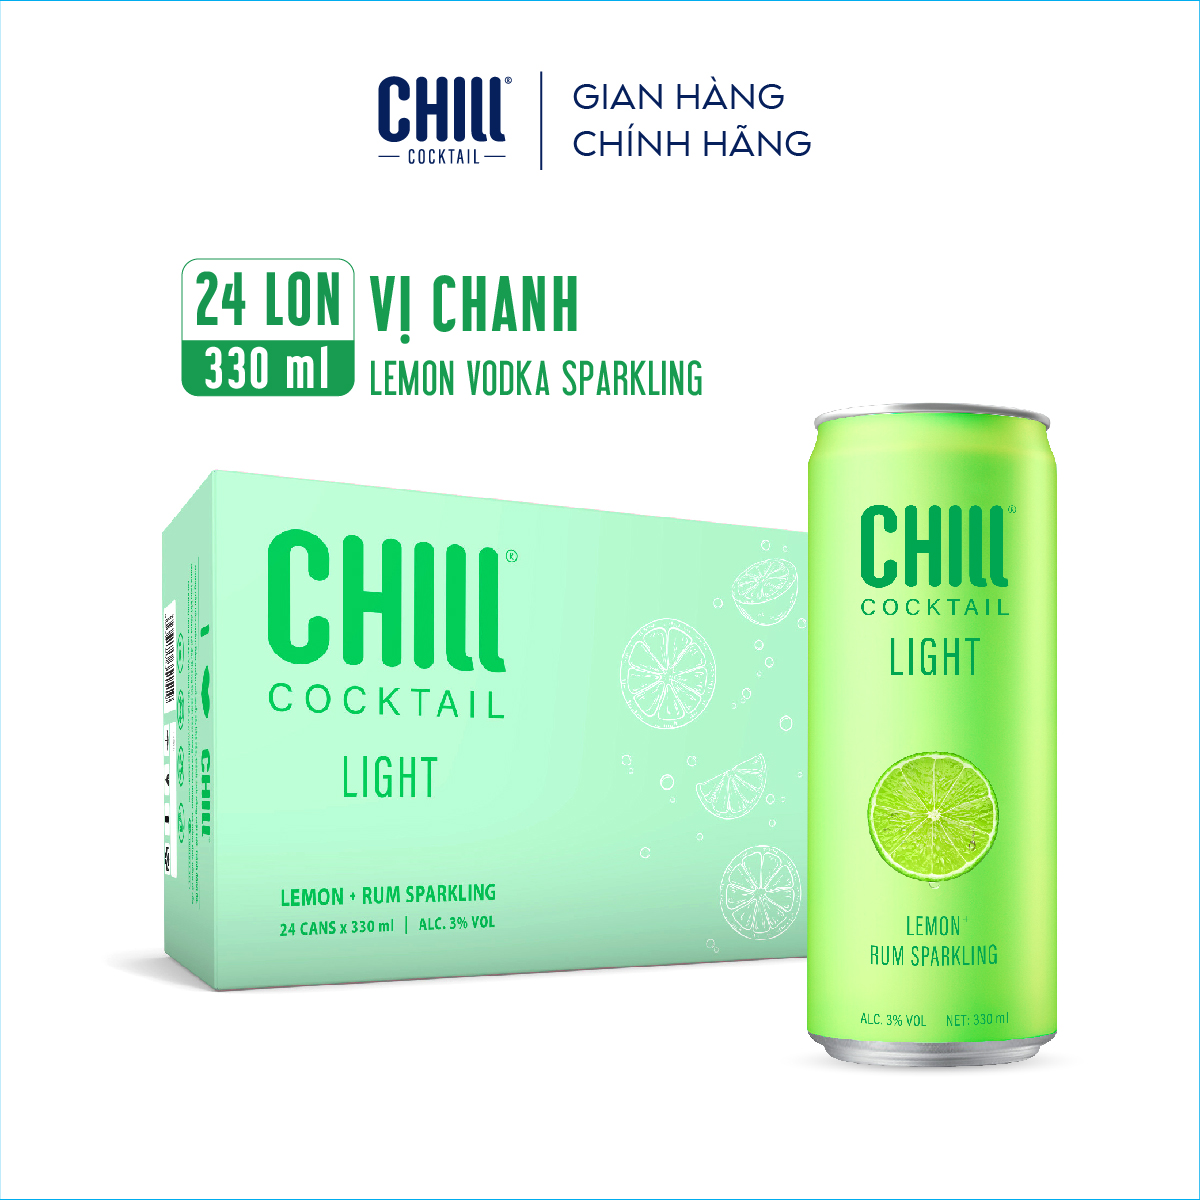 Thùng 24 lon Chill Cocktail vị Chanh 330ml lon độ cồn 3%